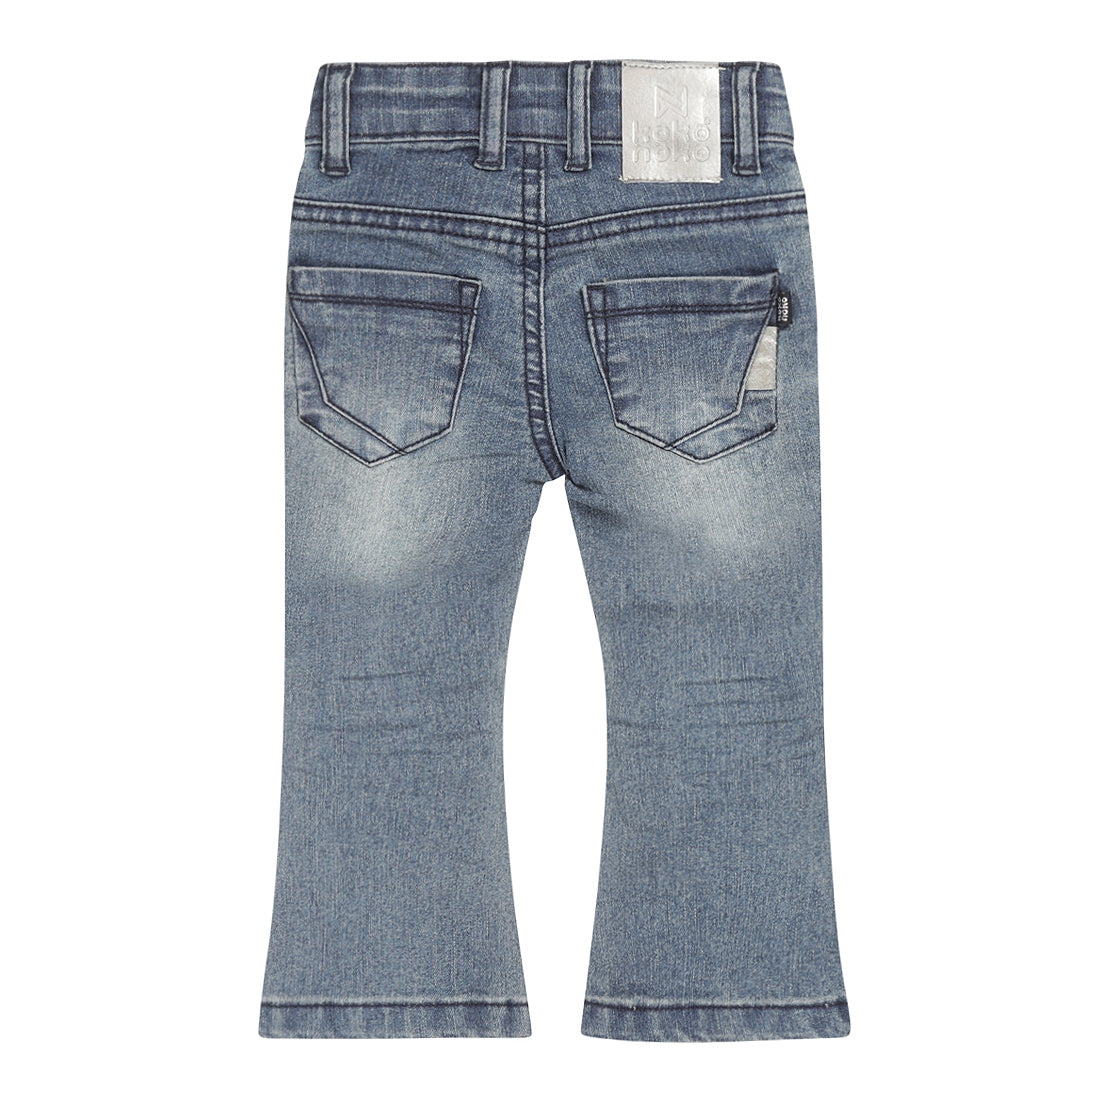 Meisjes Jeans flared van Koko Noko in de kleur Blue jeans in maat 128.